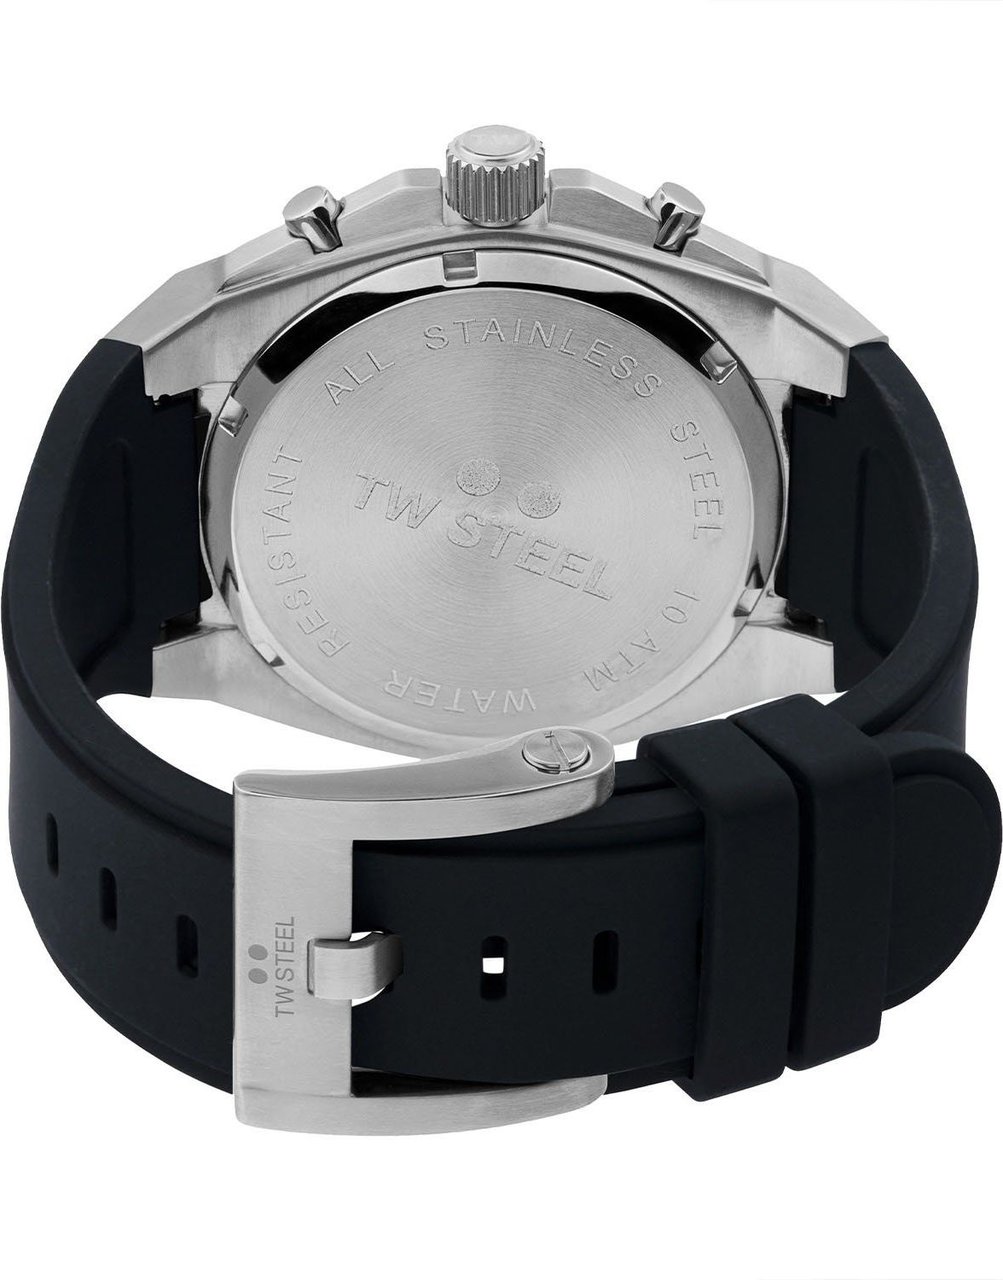 TW Steel CE4104 CEO Tech chronograaf horloge 44 mm Zwart